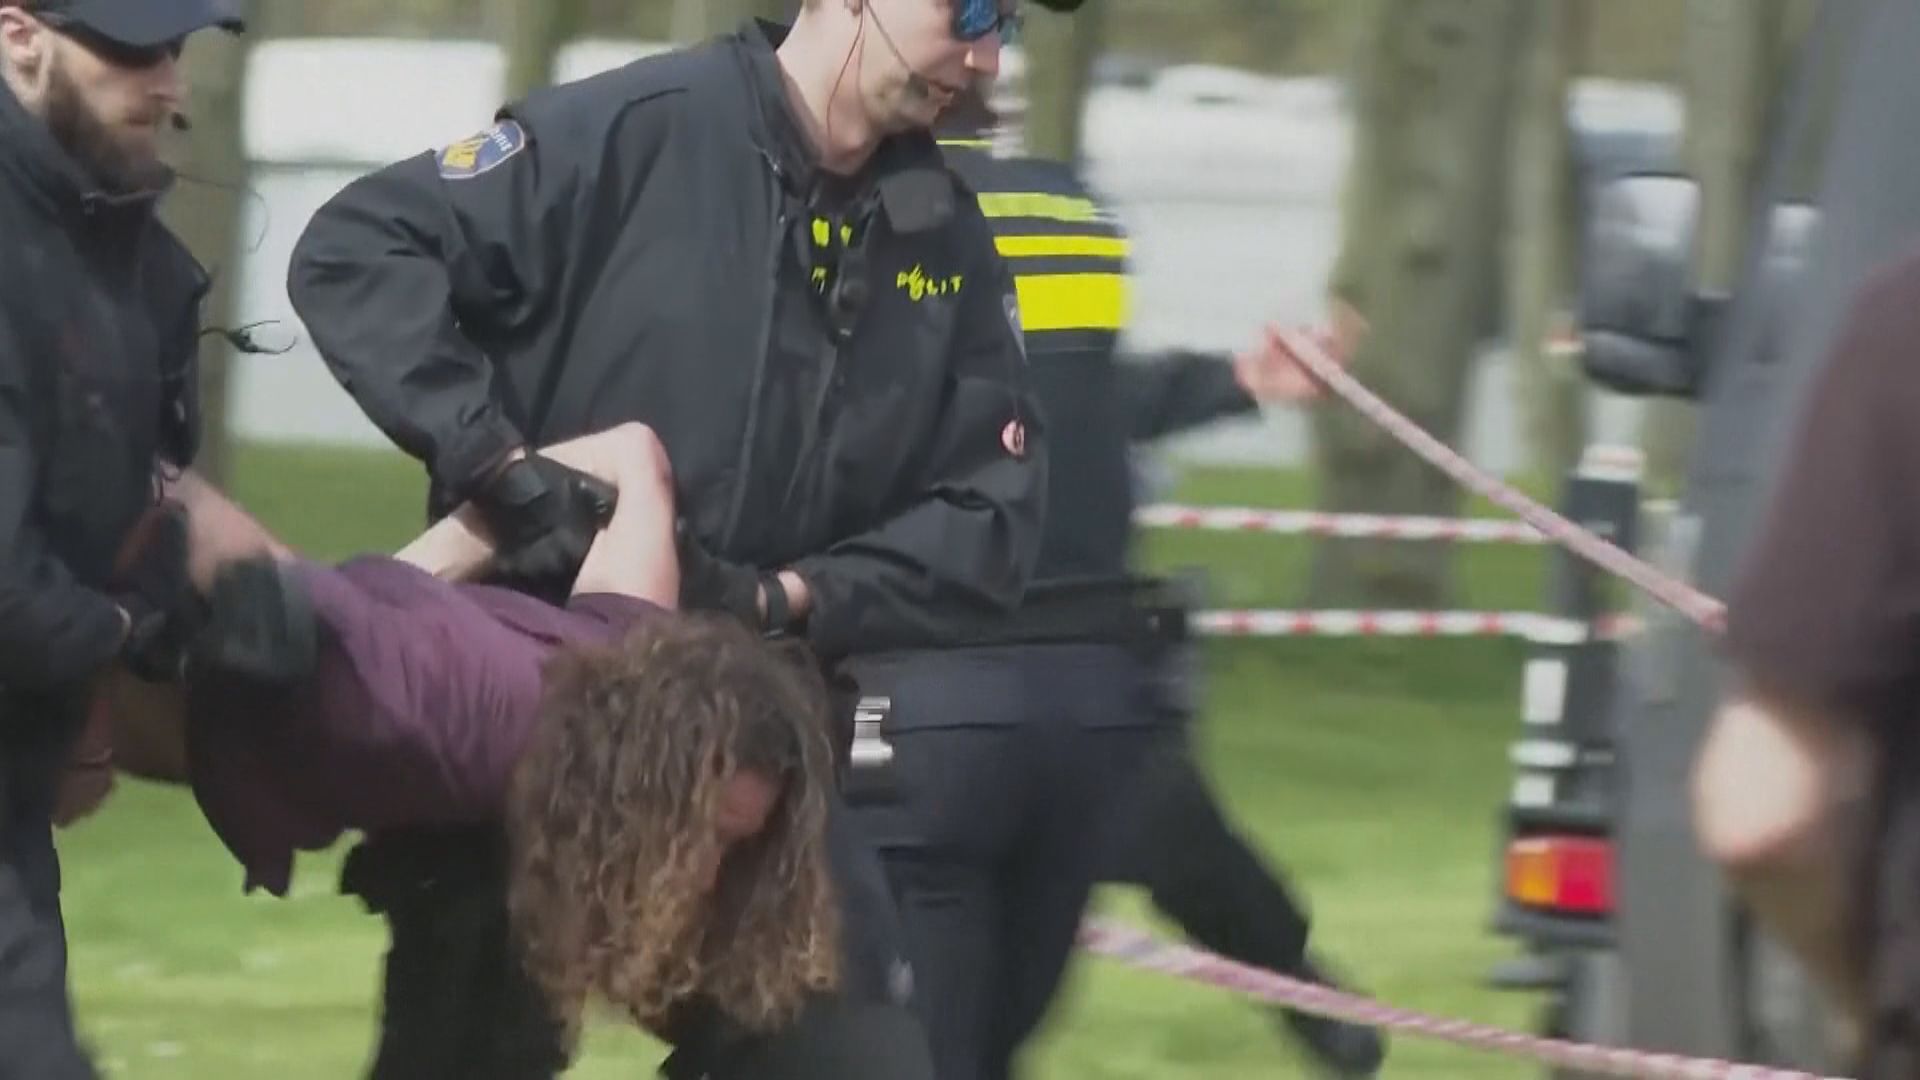 瑞典環保少女通貝里在荷蘭參與堵路示威被捕